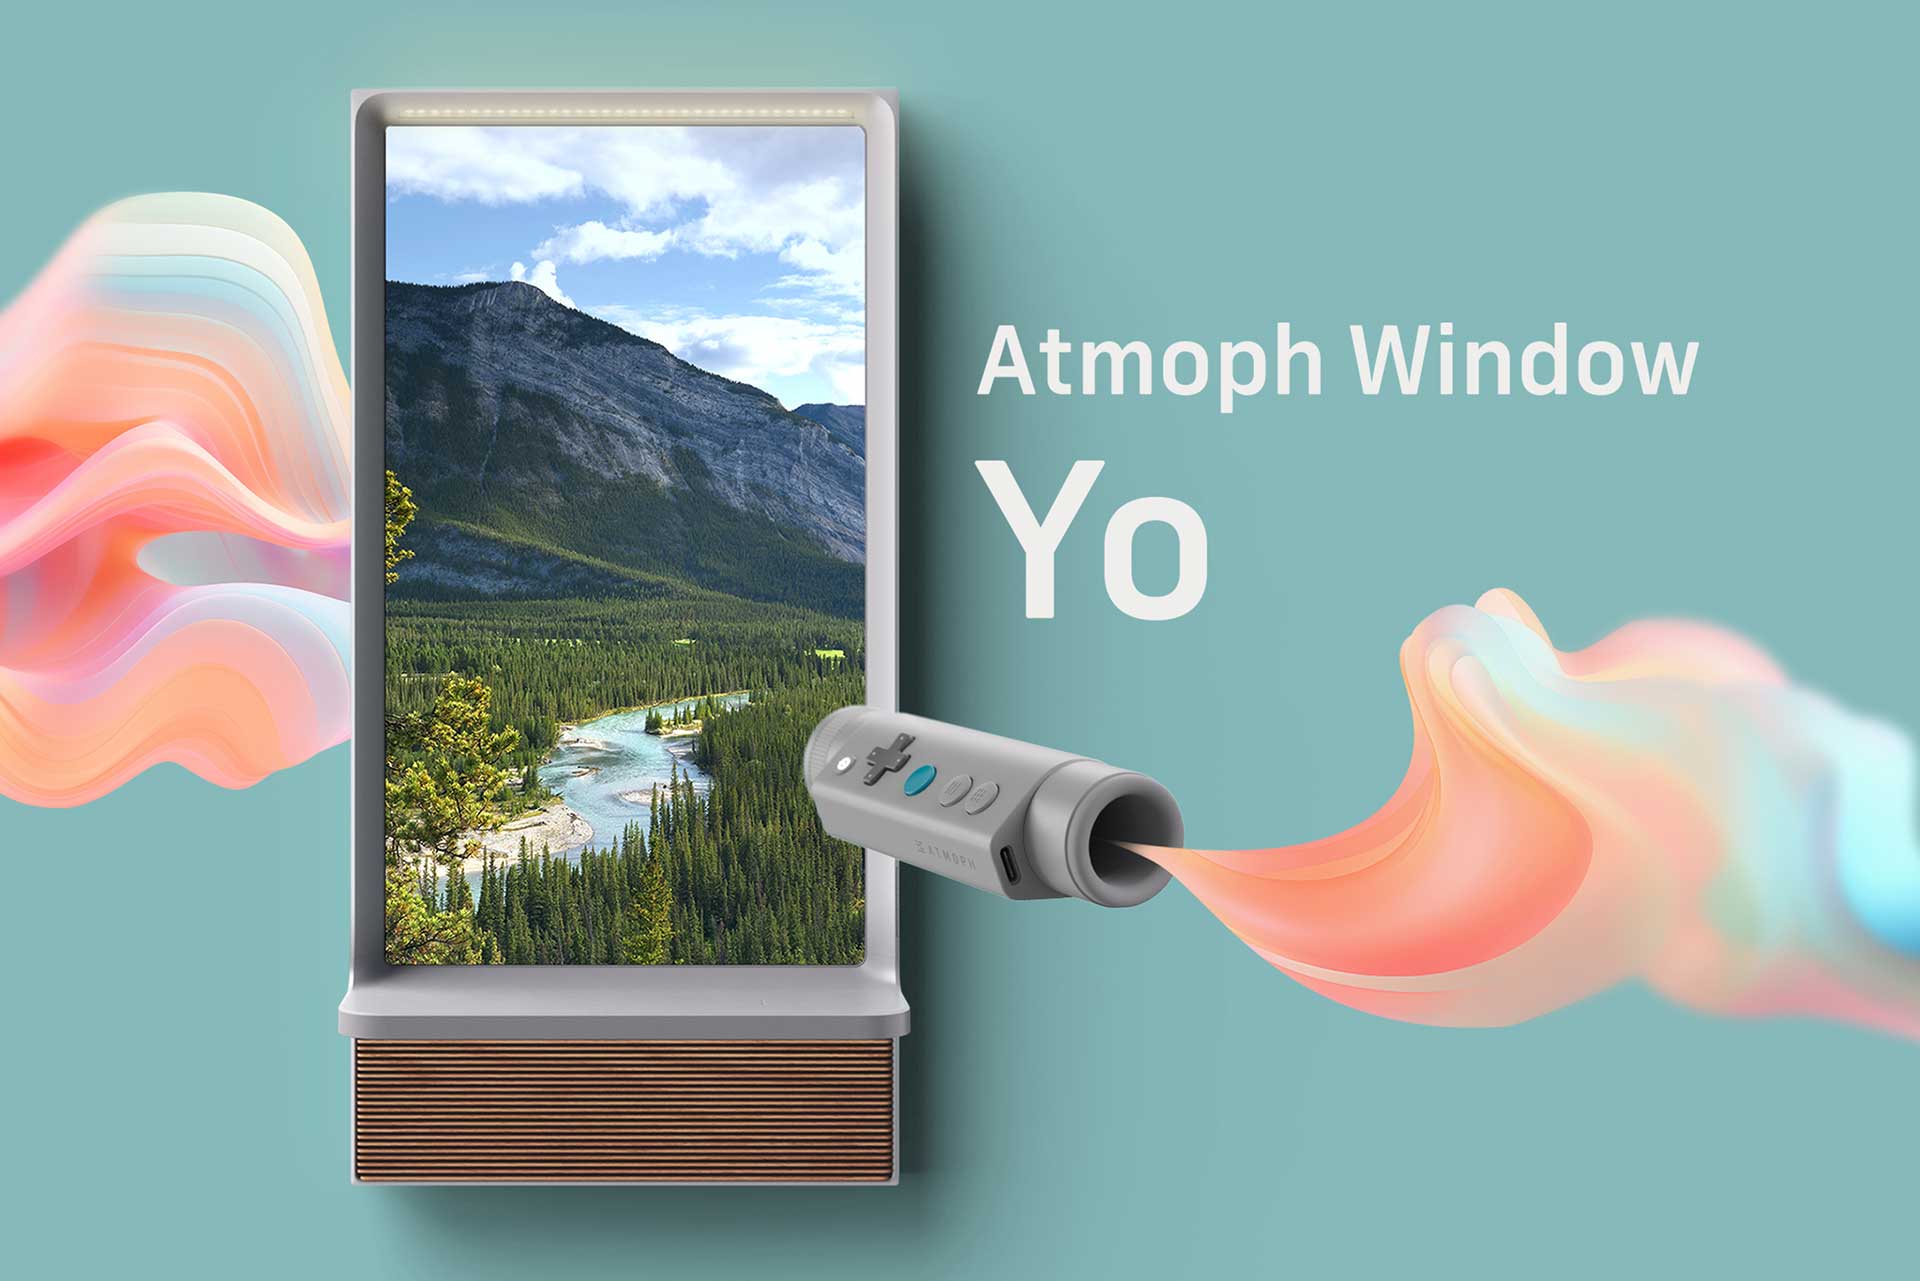 望遠鏡コントローラでズームできるデジタル窓「Atmoph Window Yo」 - AV Watch